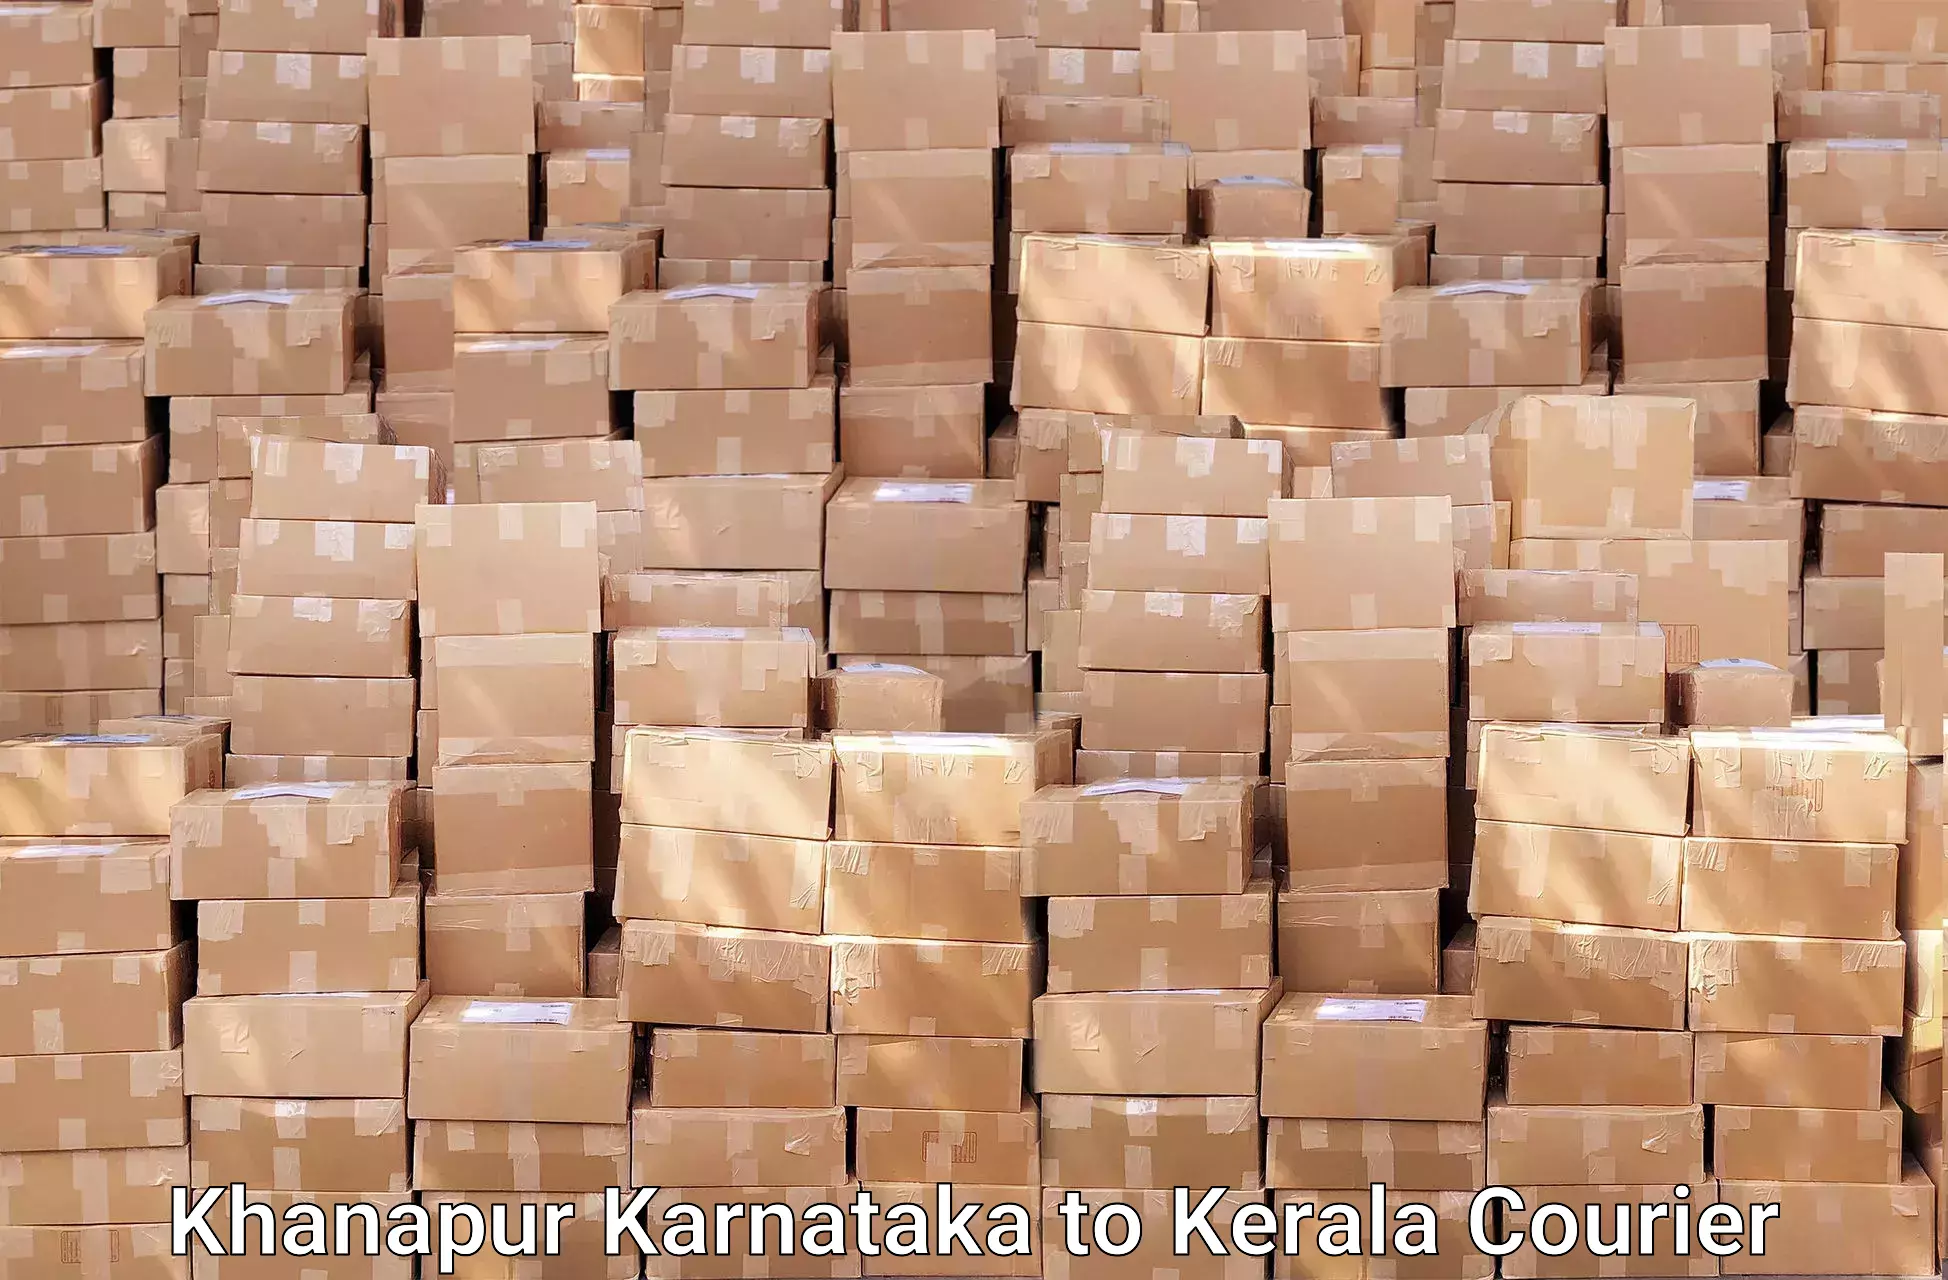 Trusted relocation experts Khanapur Karnataka to Munnar